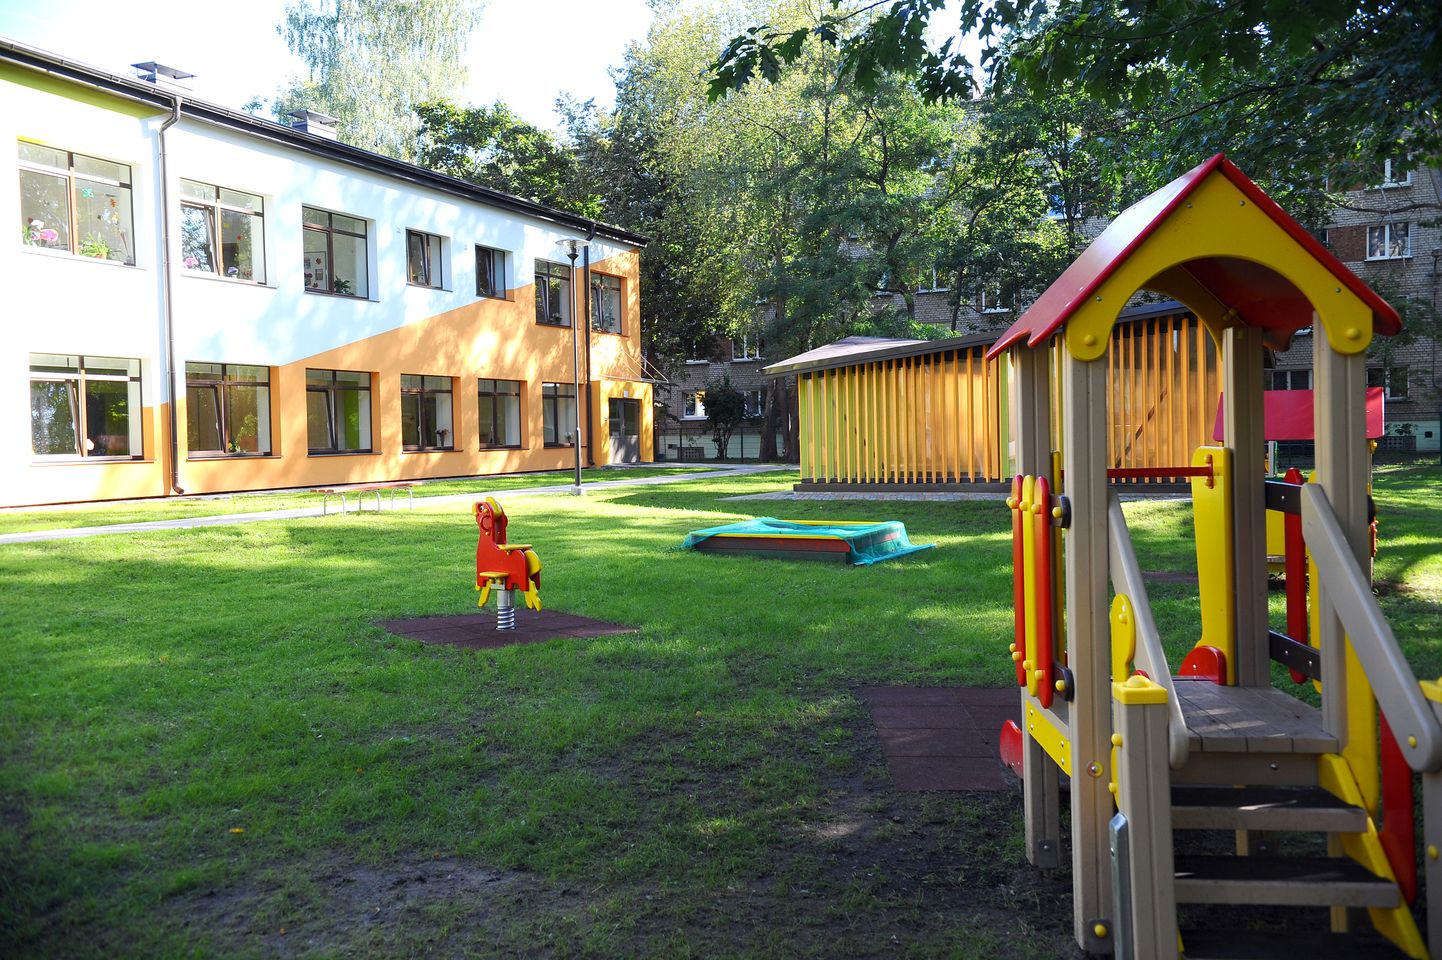 Rotaļu laukums Rīgas 182. pirmsskolas izglītības iestādes jaunajā filiālē.